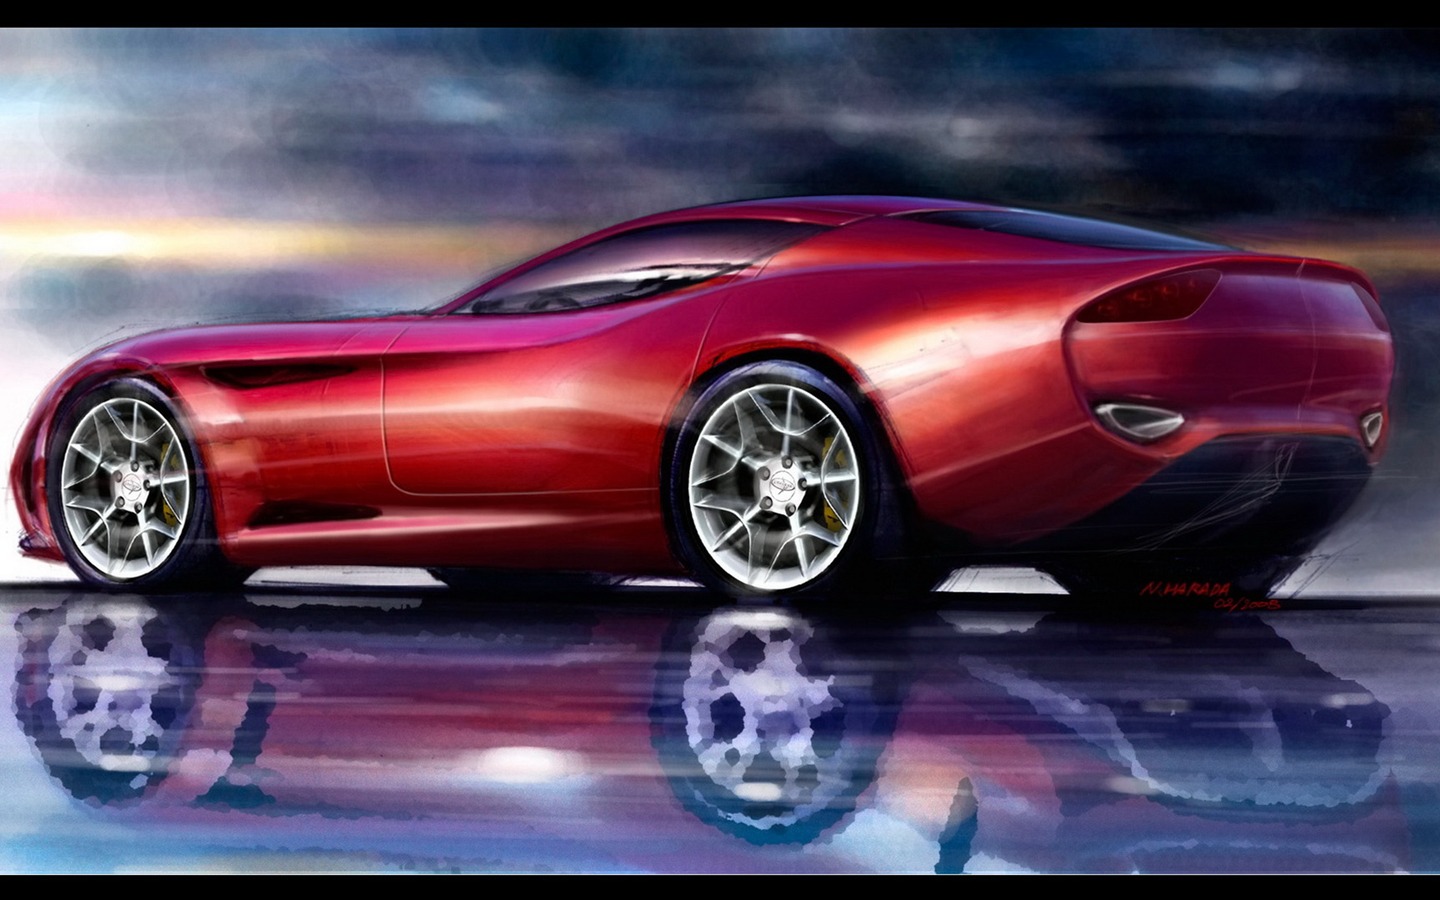 ザガートはPeranaのZ - 1のスポーツカーを設計 #1 - 1440x900